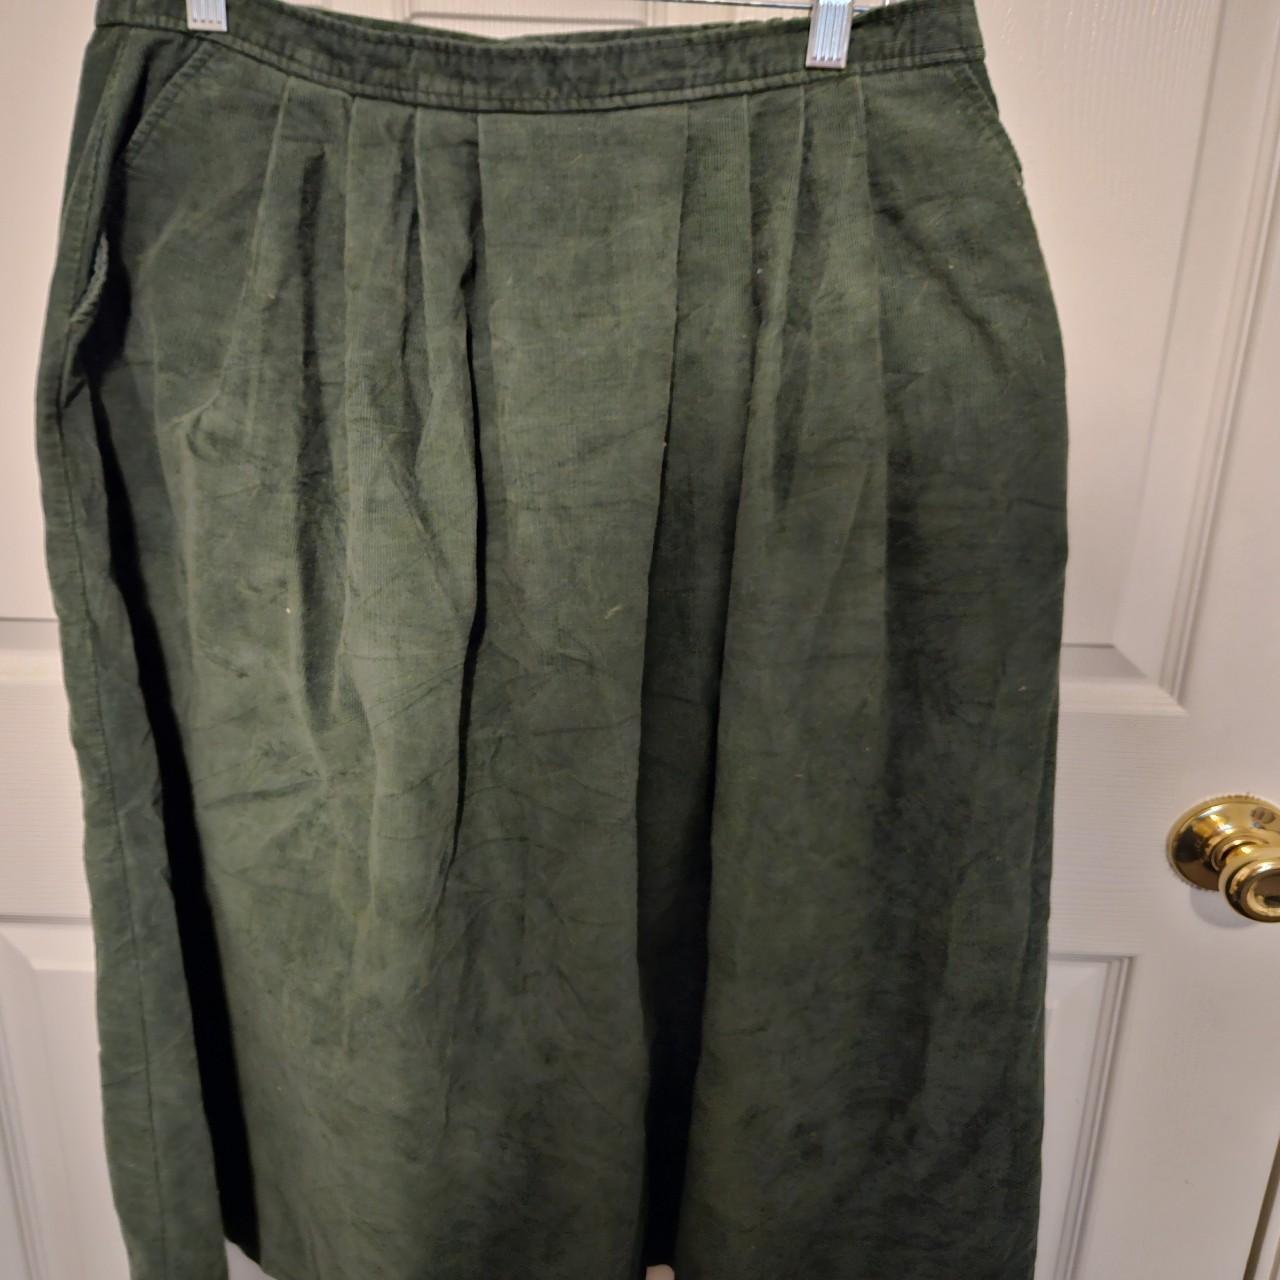 🌱 green corduroy maxi skirt 🌱 ️ size 16 waist... - Depop